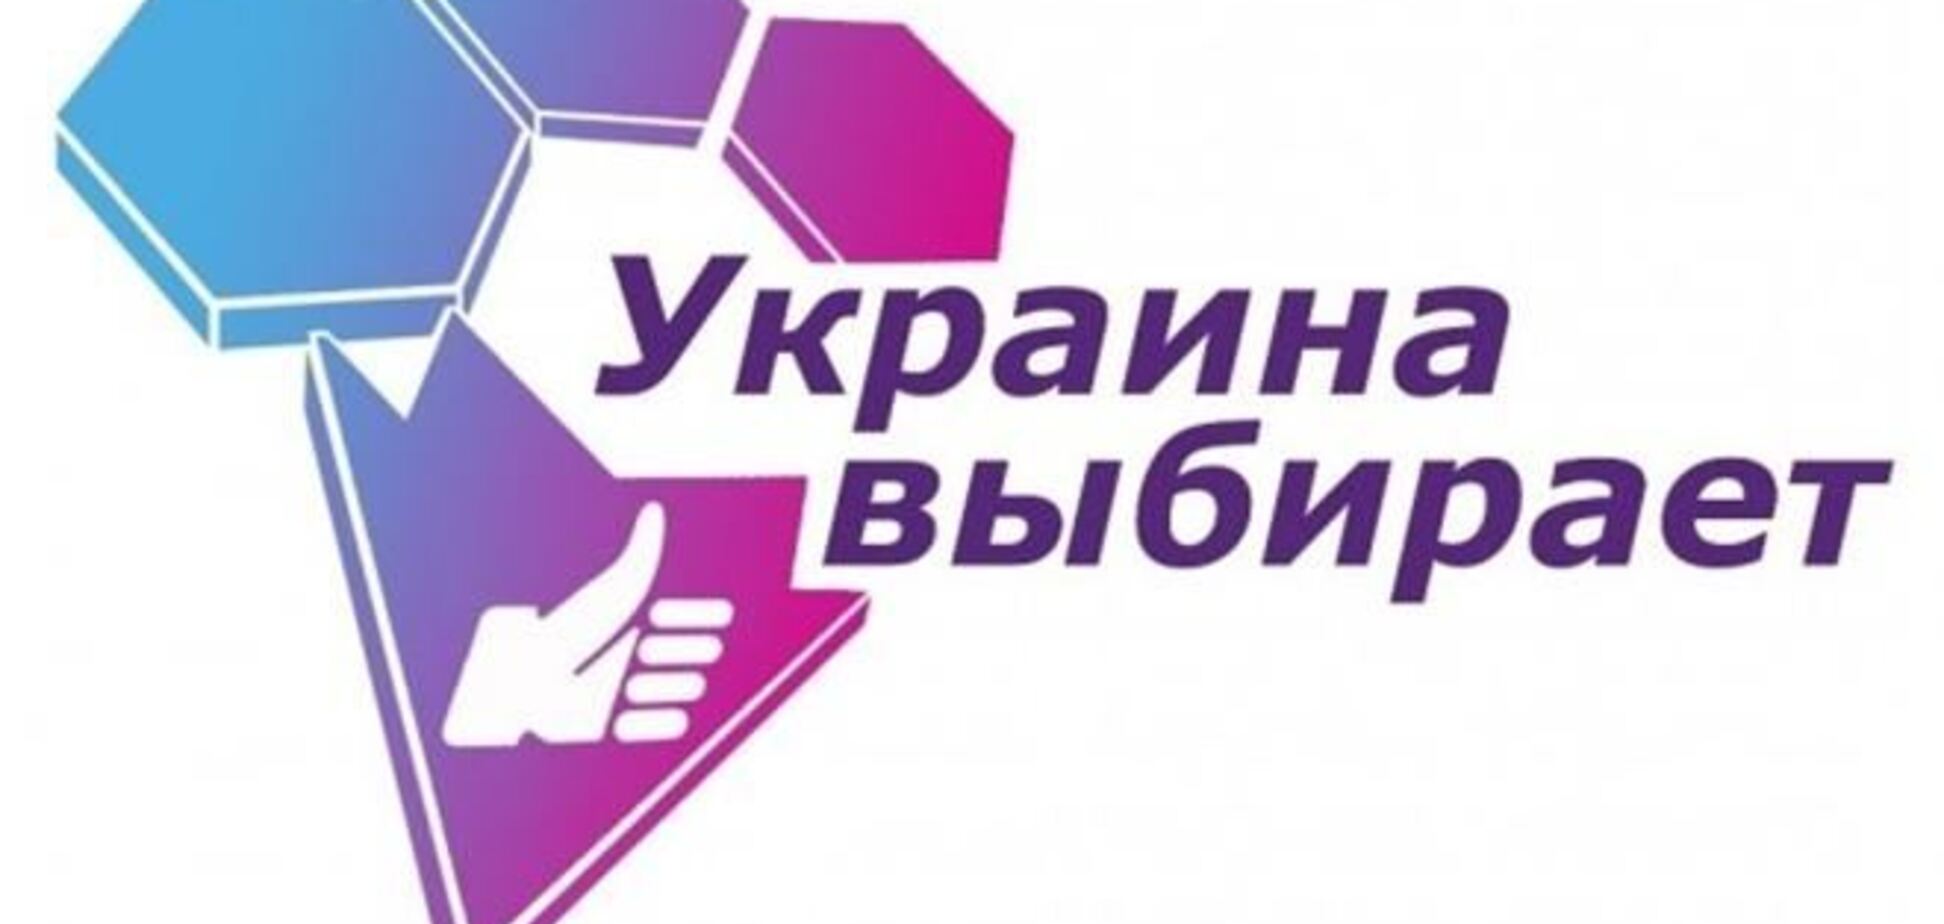 Медведчука переслідують з політичних мотивів - 'Український вибір'